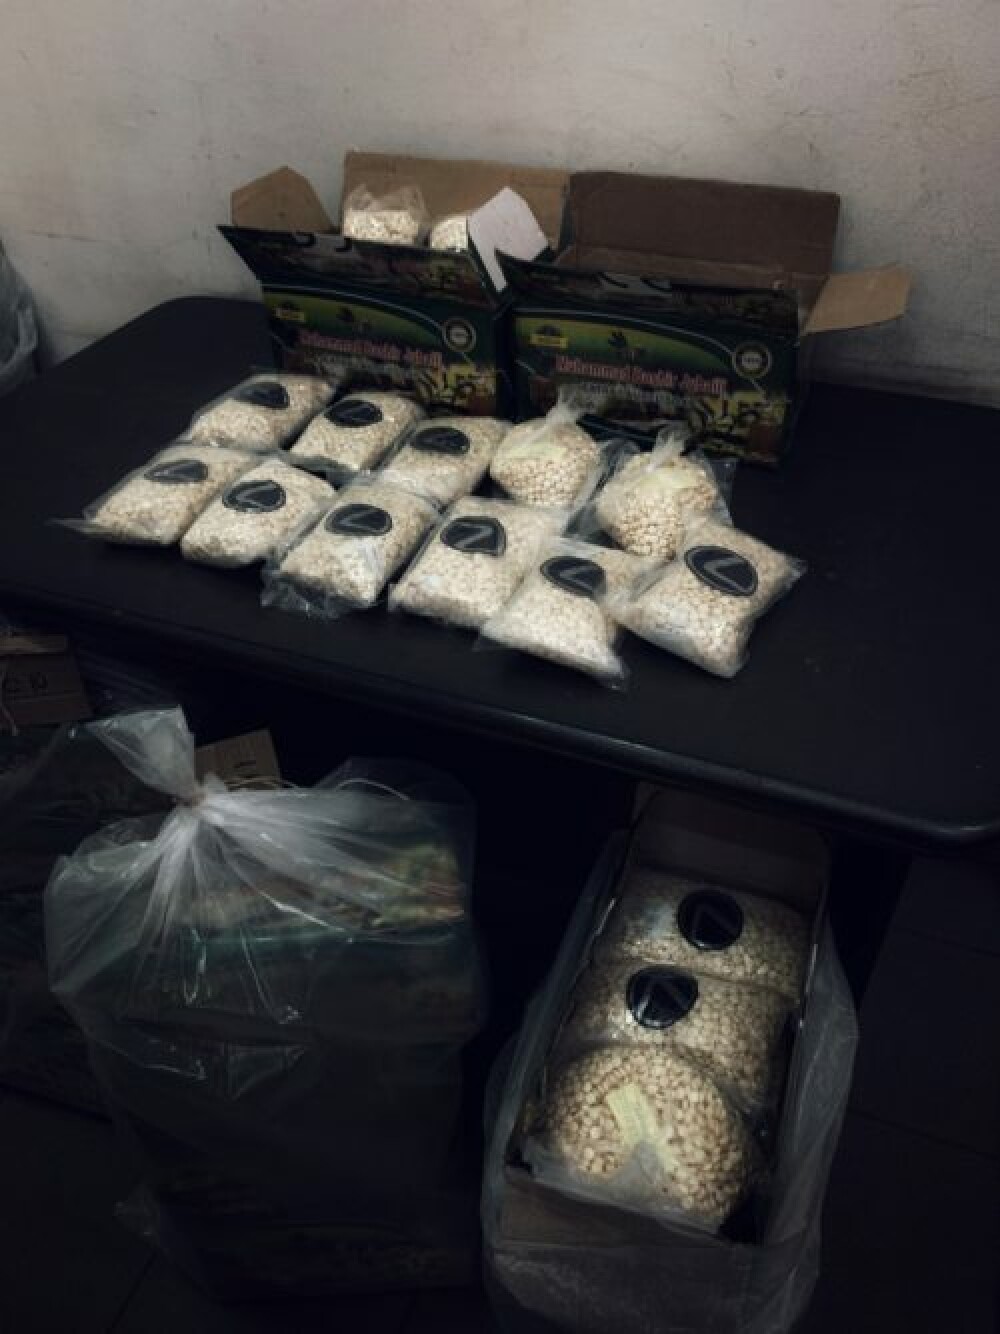 Captură de droguri record în România: 1.480 kg de hașiș și 751 kg de pastile de captagon - Imaginea 2